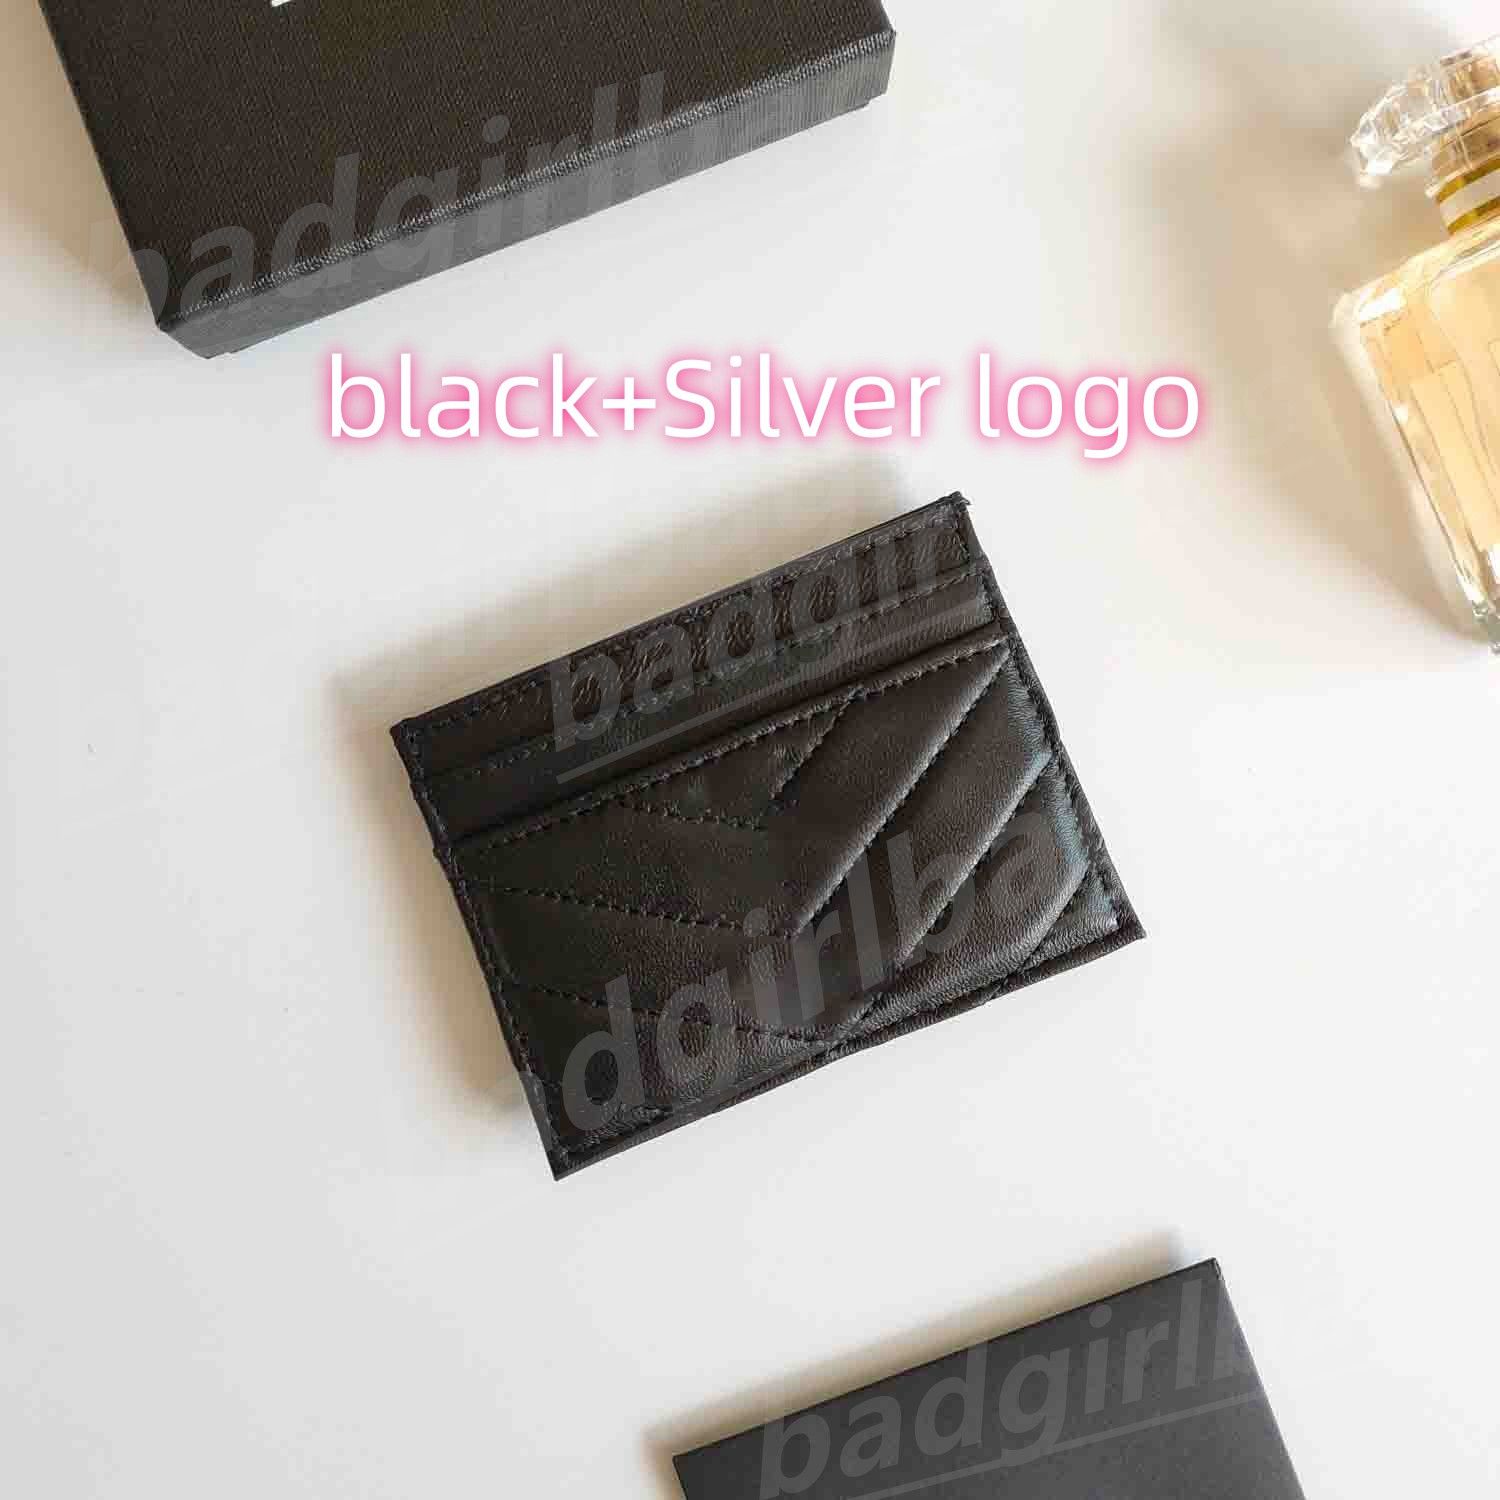 Black+Silver logo